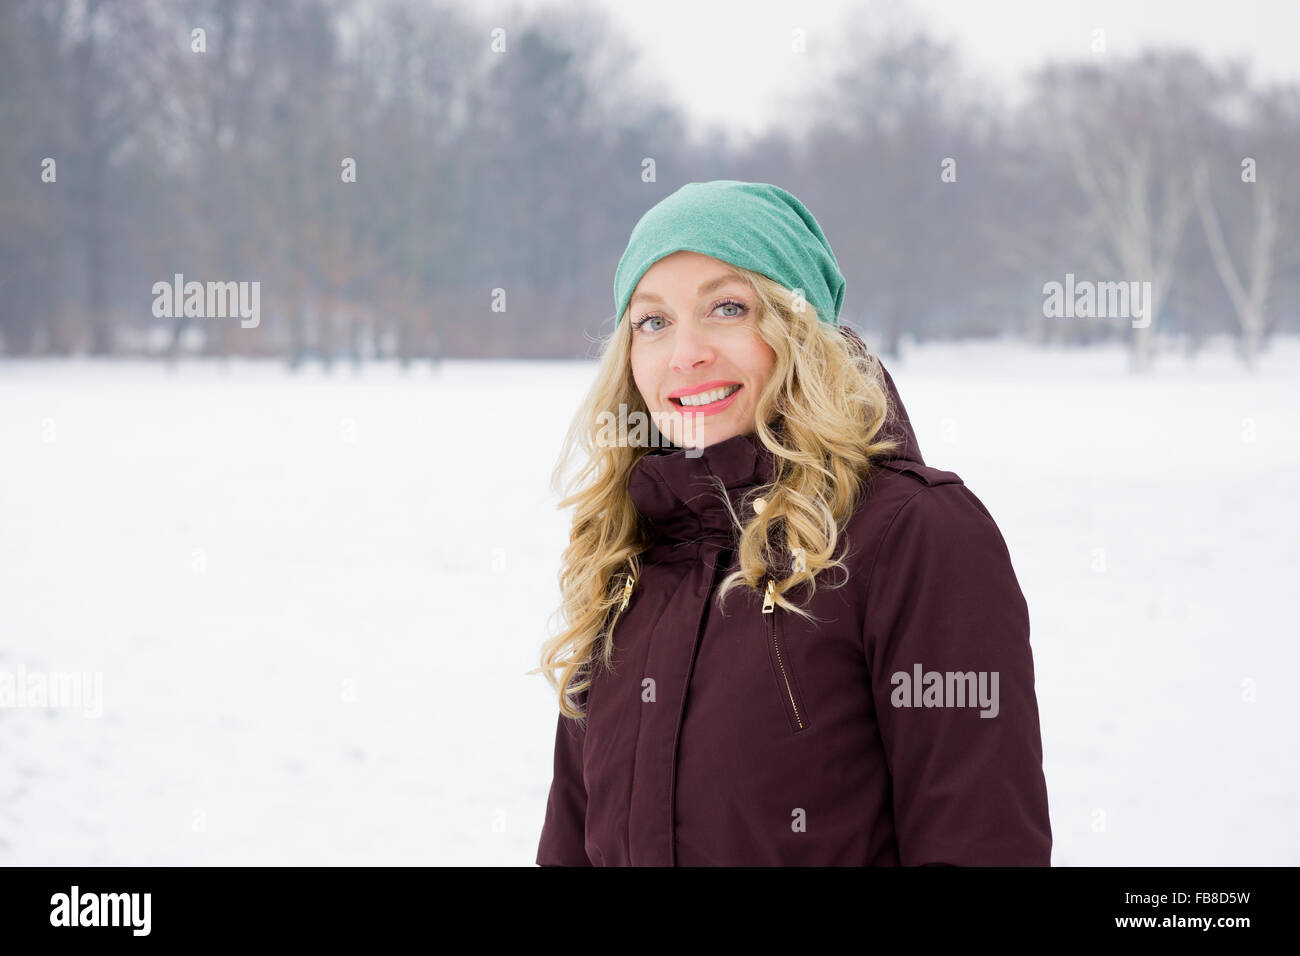 woman walking on snowy field Stock Photo